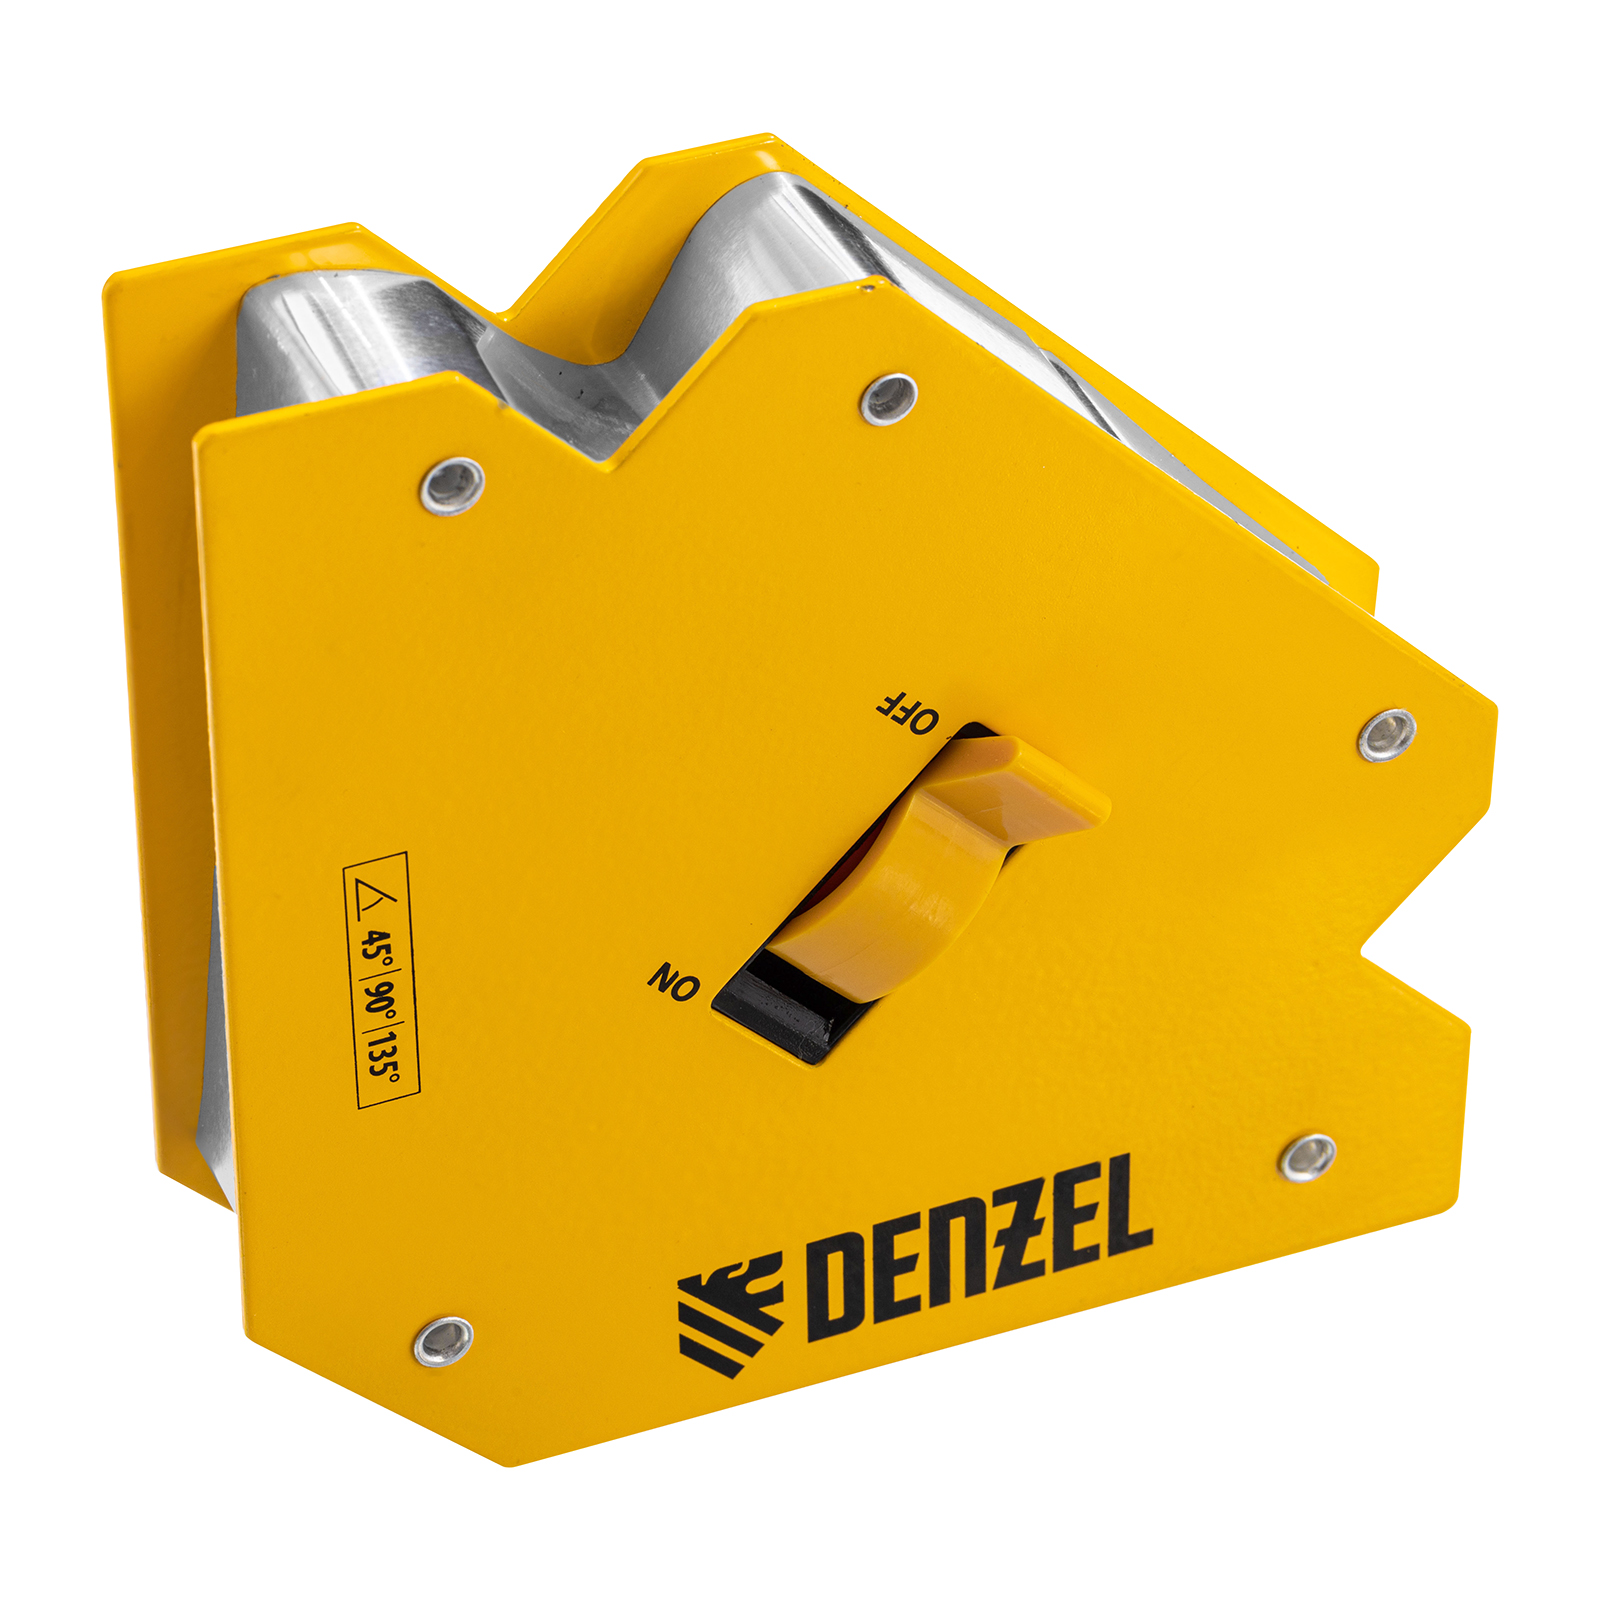 Фиксатор магнитный отключаемый для сварочных работ DENZEL усилие 55 LB, 45х90х135 гр 97564 магнитный фиксатор для сварочных работ ultima